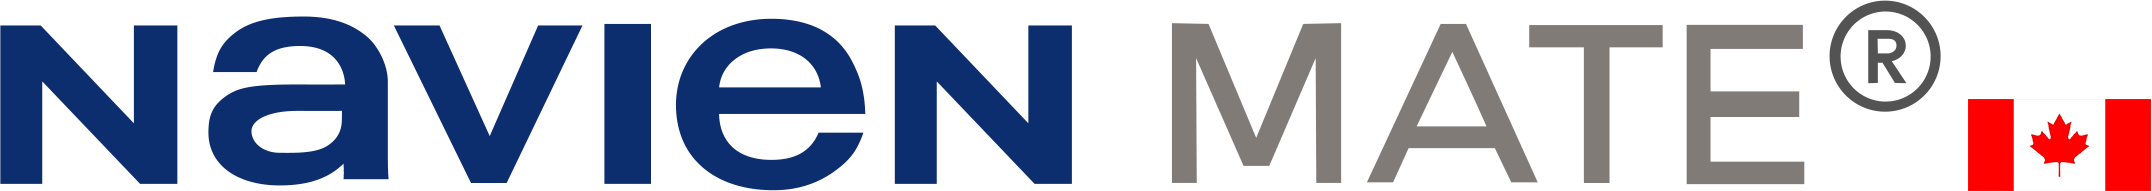 Navienmate | Authorized Retailer of Navien Mate Water Heated Mattress Pad